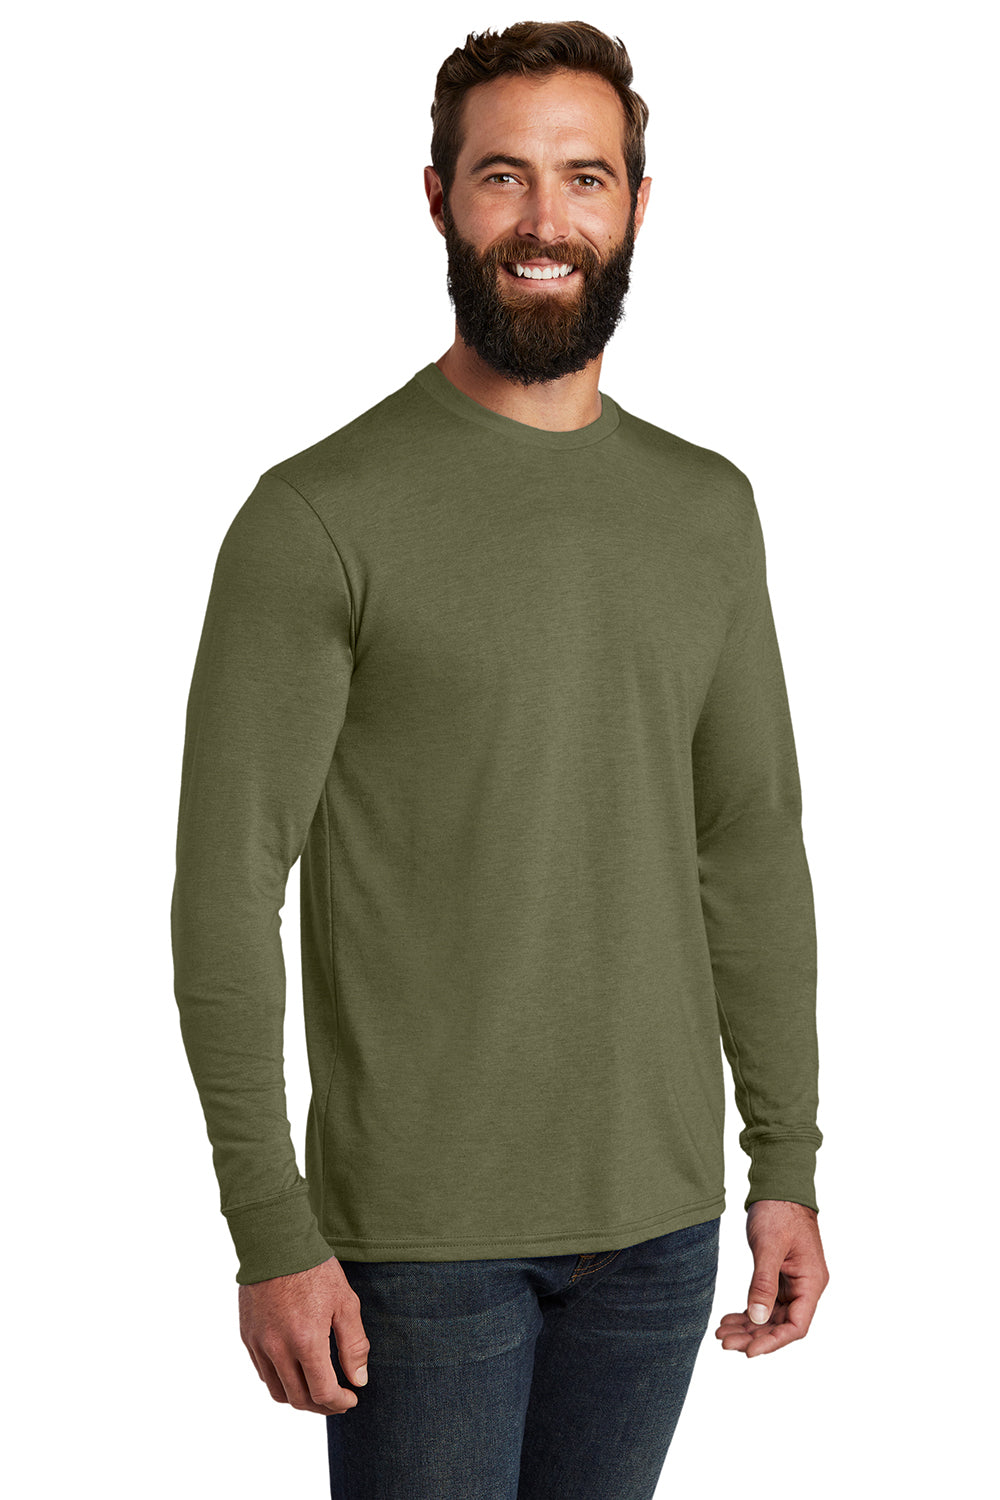 Allmade AL6004 Mens Long Sleeve Crewneck T-Shirt Olive You Green Model 3Q